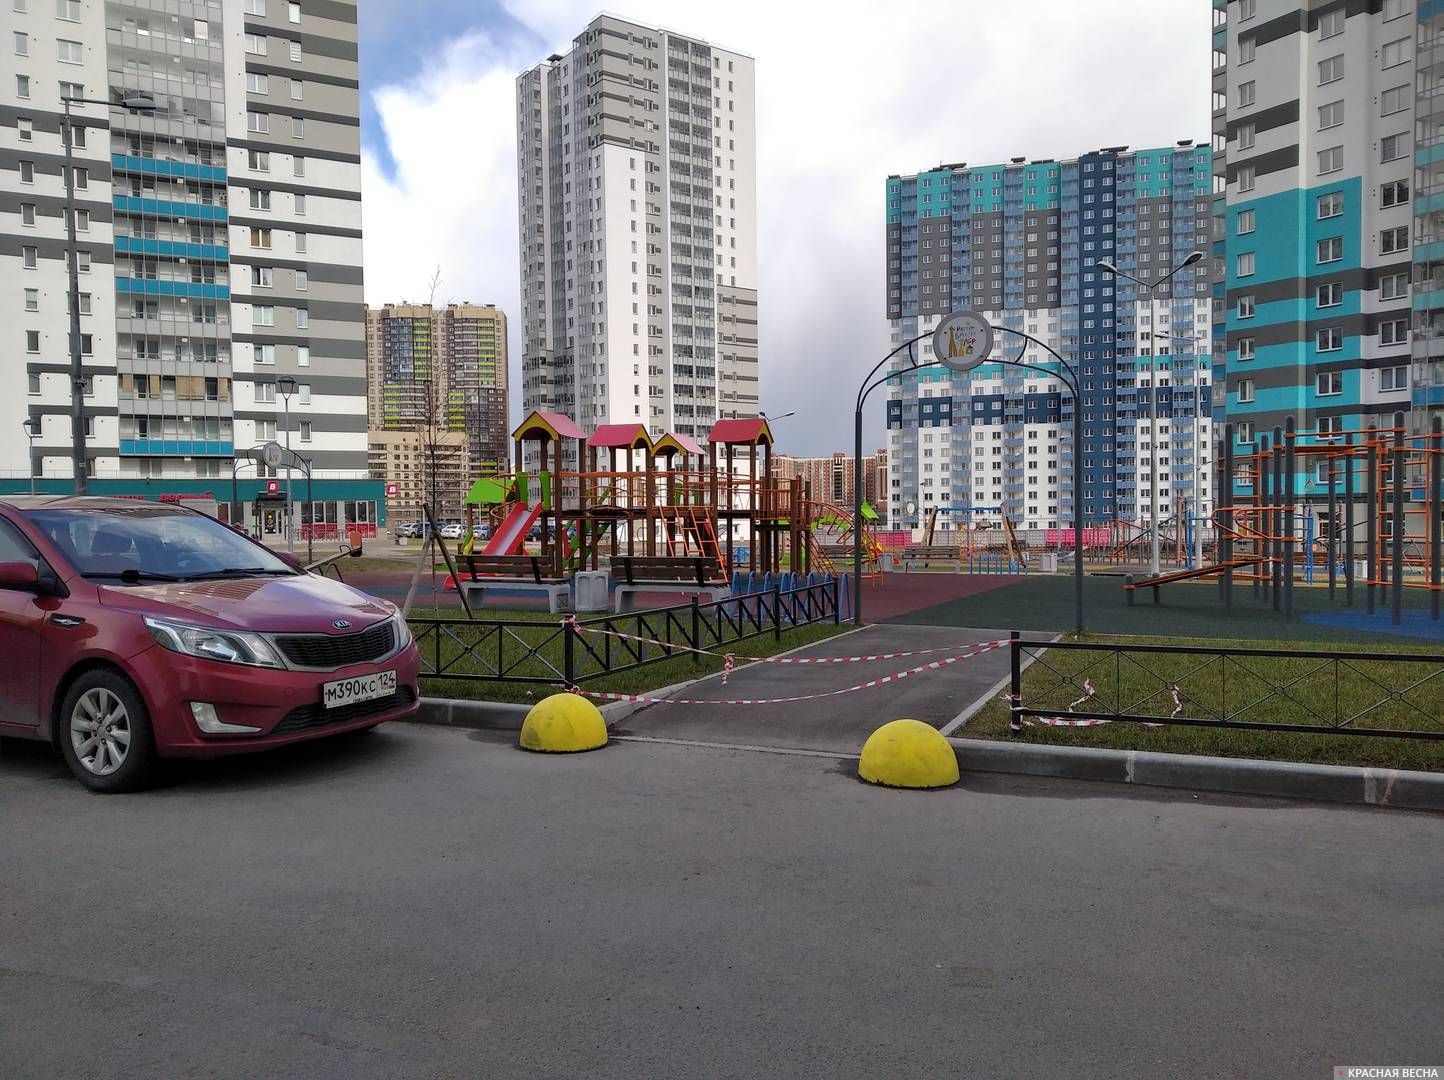 Санкт-Петербург. Детская площадка закрыта на время самоизоляции